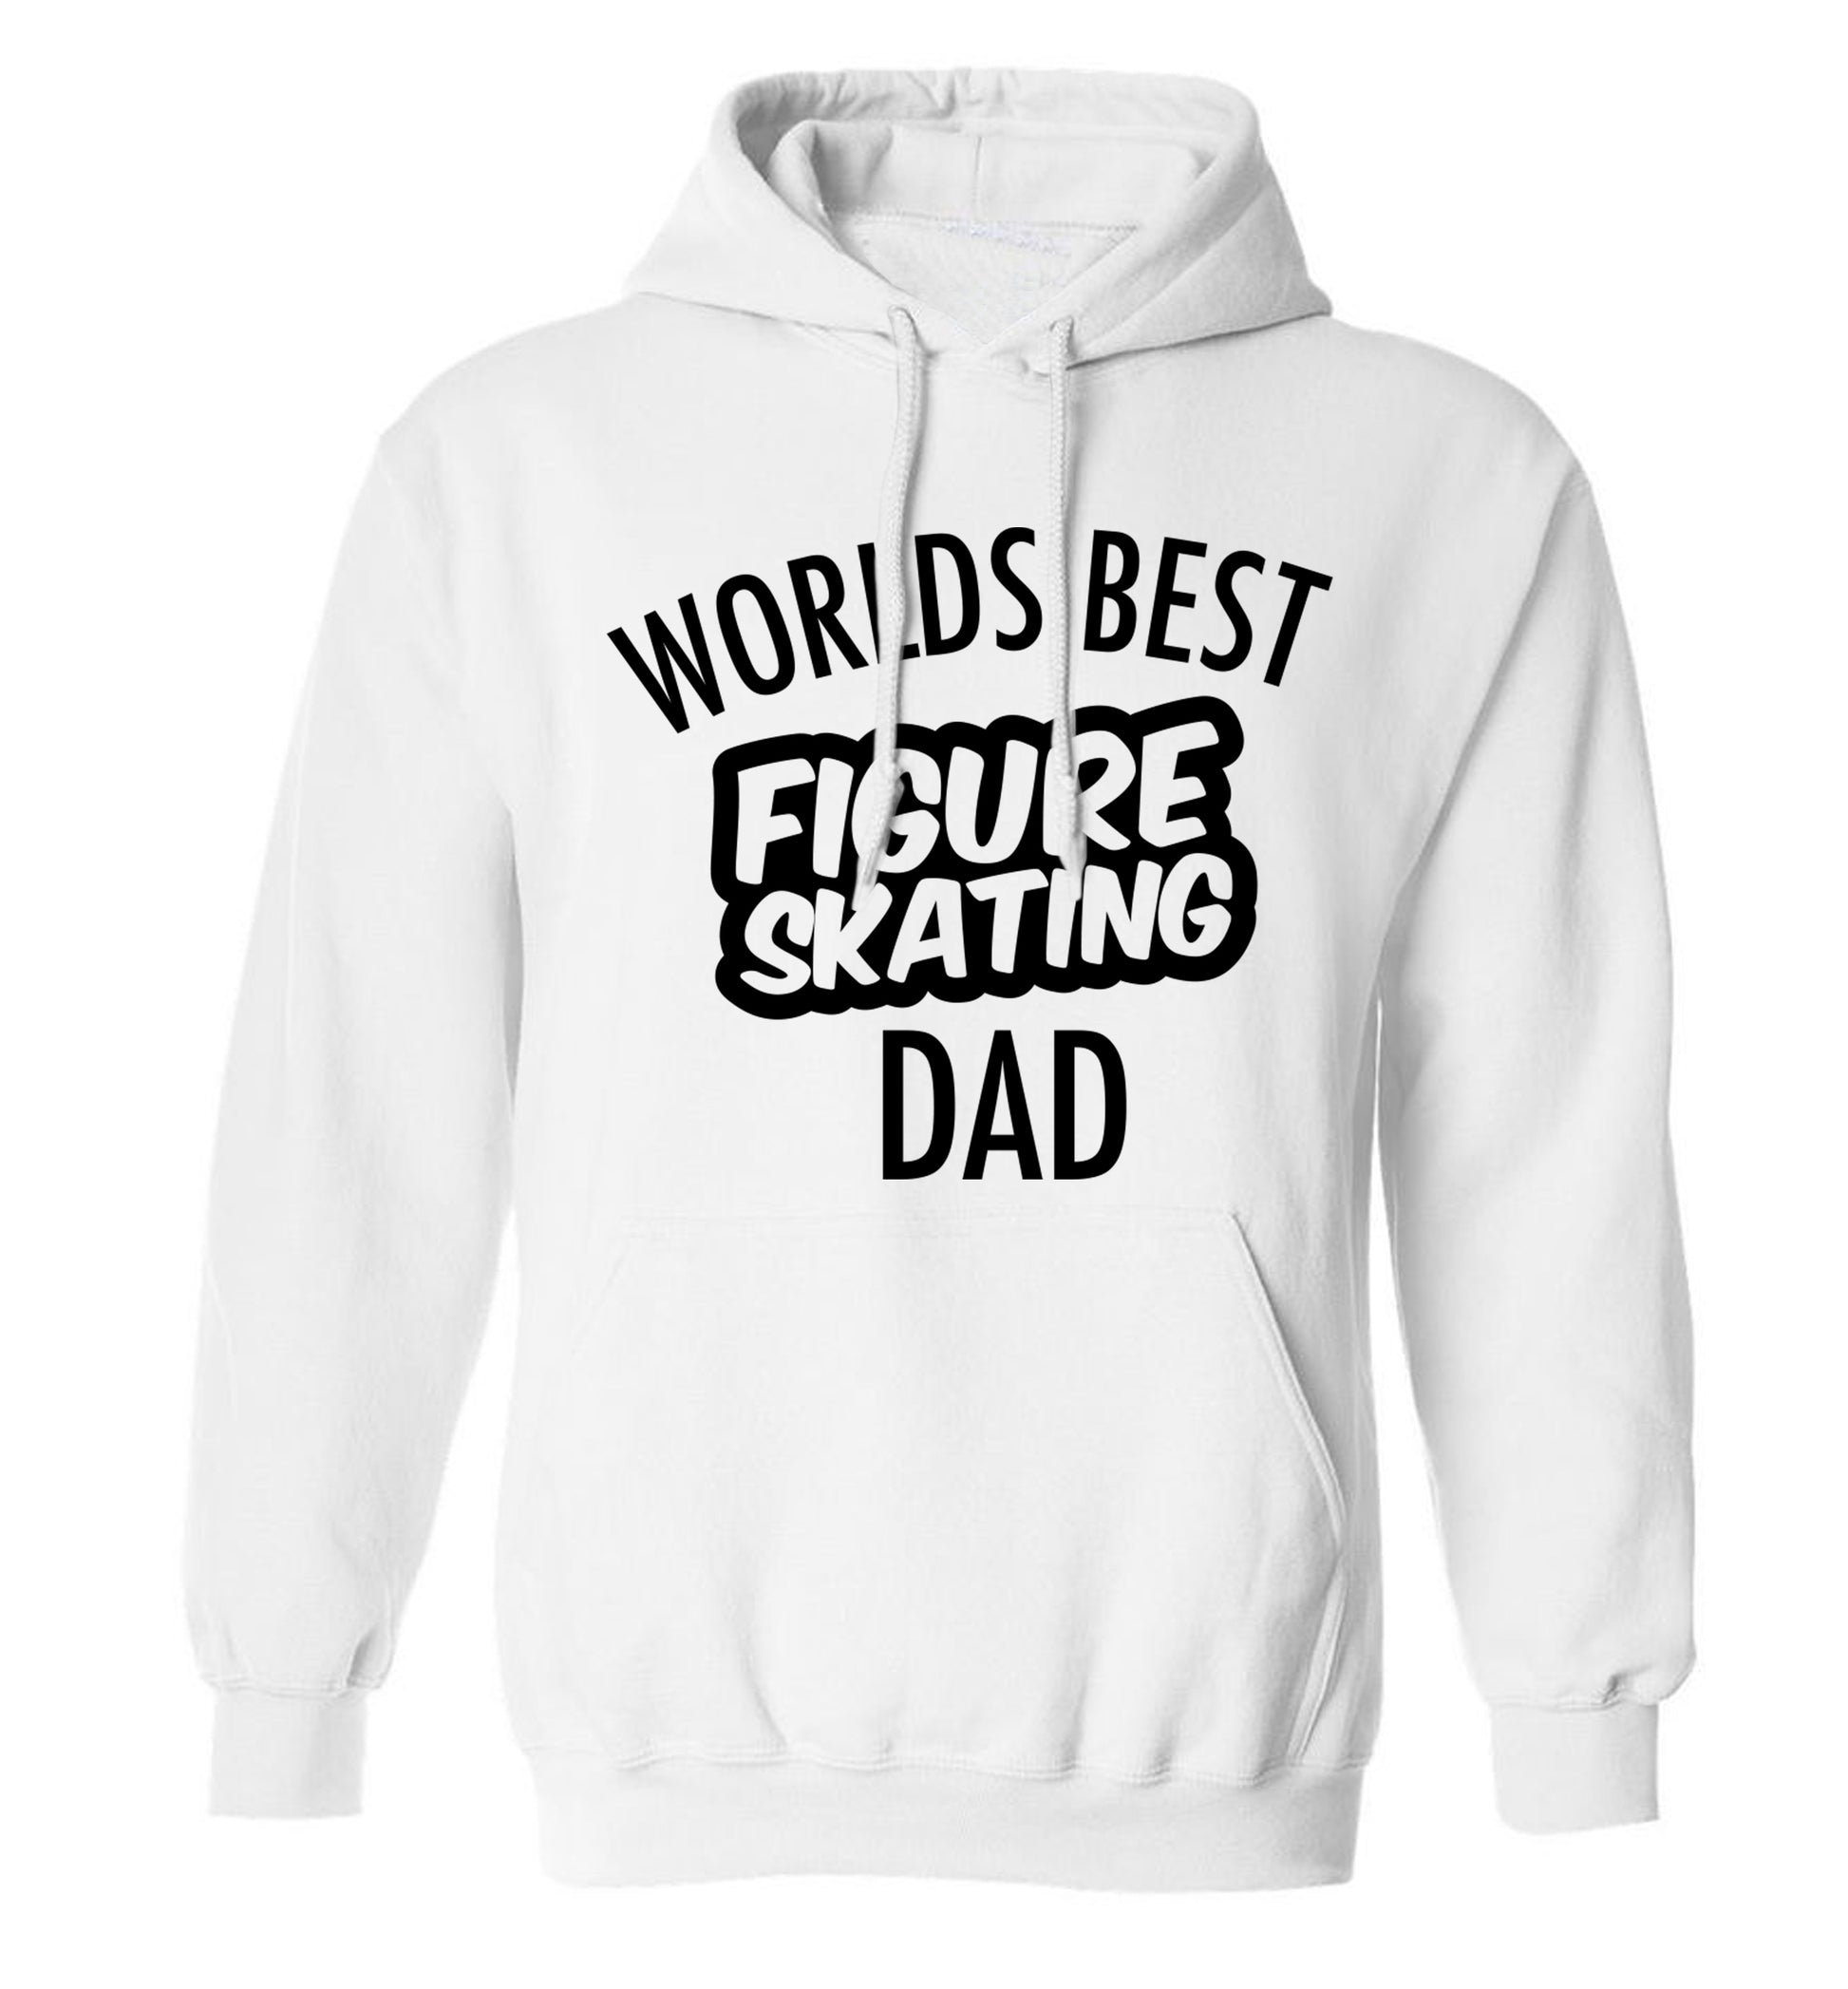 Worlds best figure skating dad adults unisexwhite hoodie 2XL